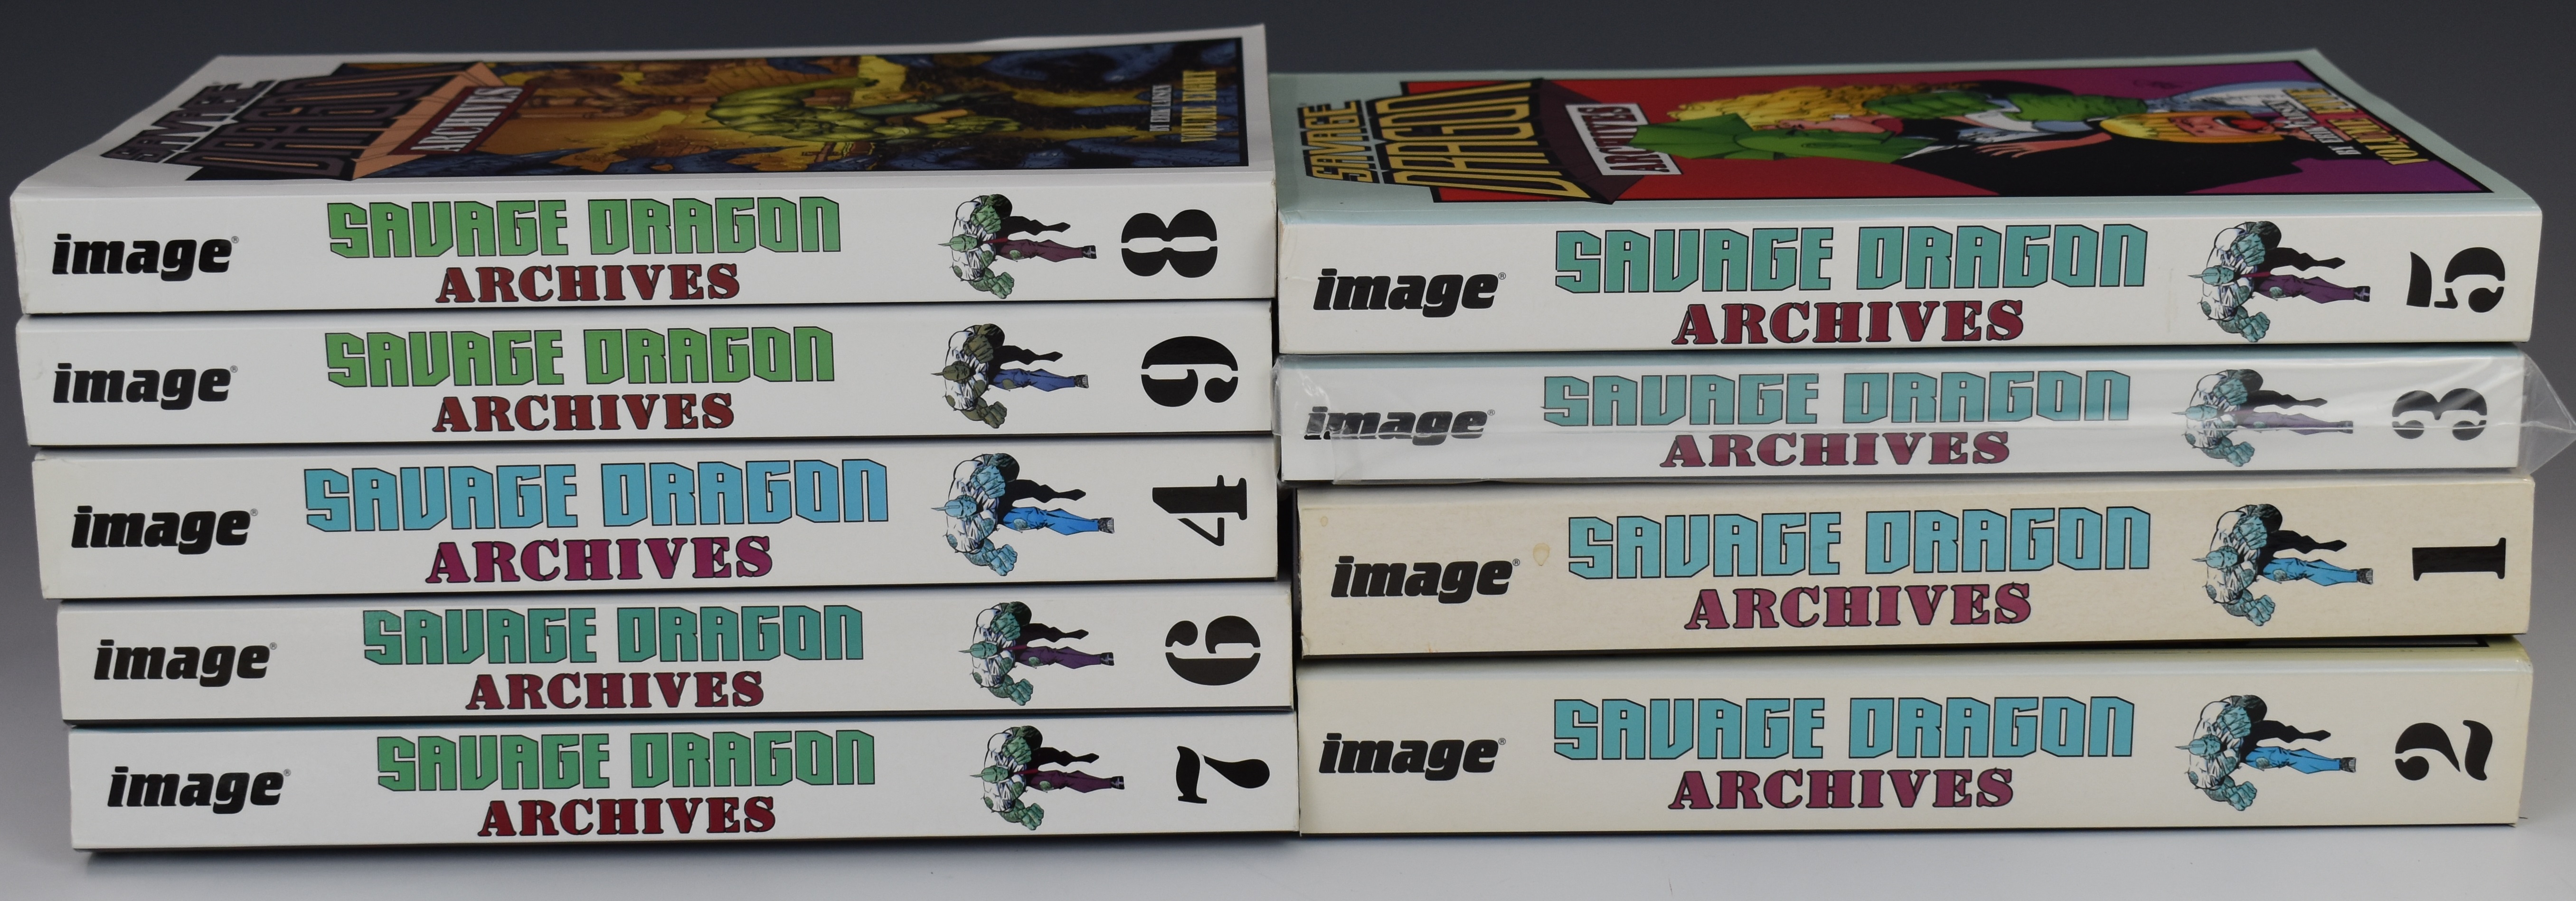 Savage Dragon Archives Volumes 1-9 by Erik Larsen, Image Comics.